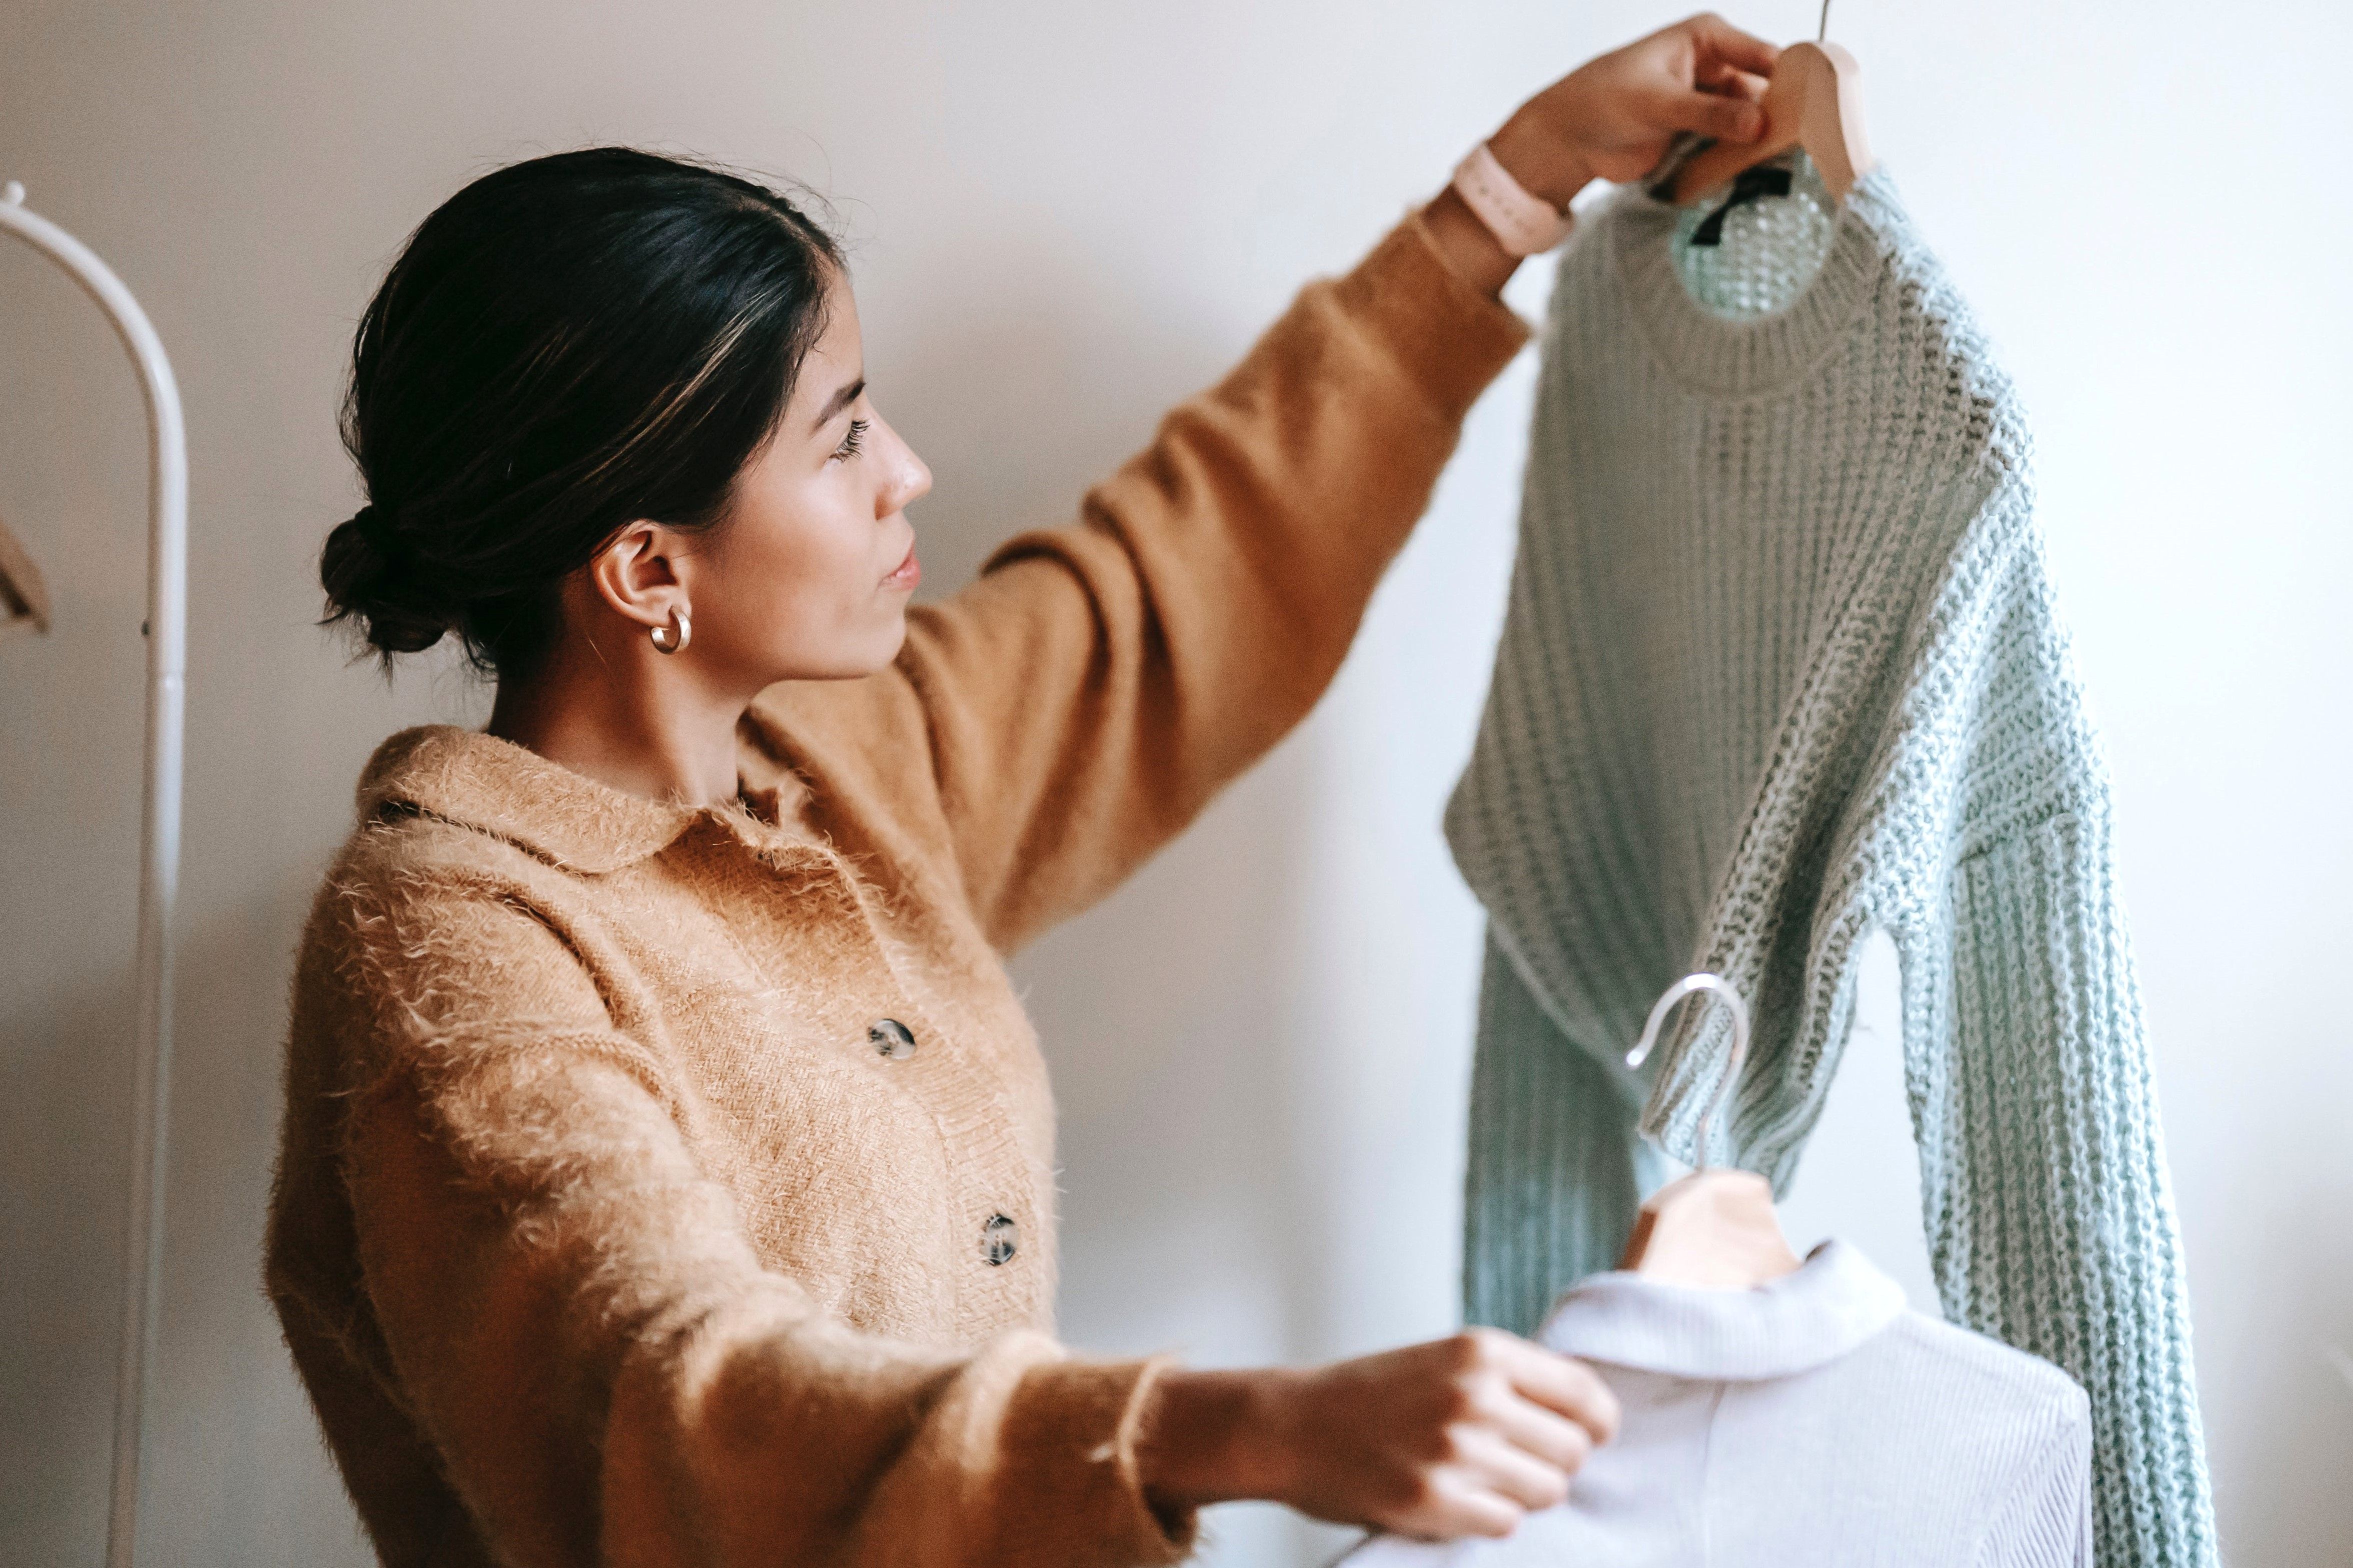 Ung kvinne holder opp og sammenligner to gensere.